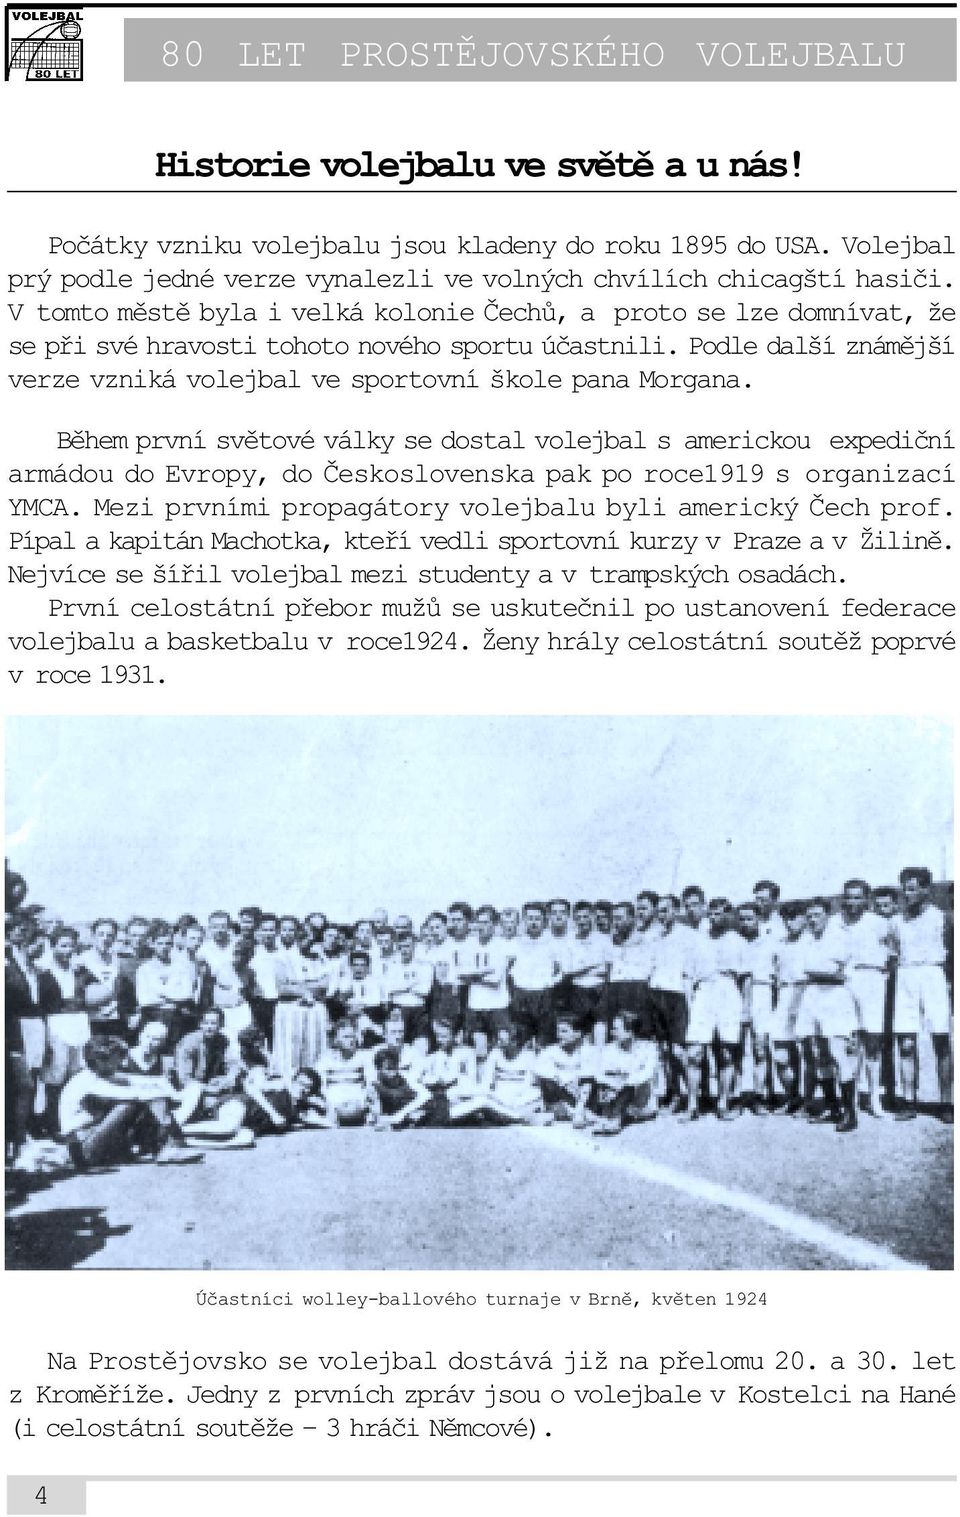 Bìhem první svìtové války se dostal volejbal s americkou expedièní armádou do Evropy, do Èeskoslovenska pak po roce1919 s organizací YMCA. Mezi prvními propagátory volejbalu byli americký Èech prof.